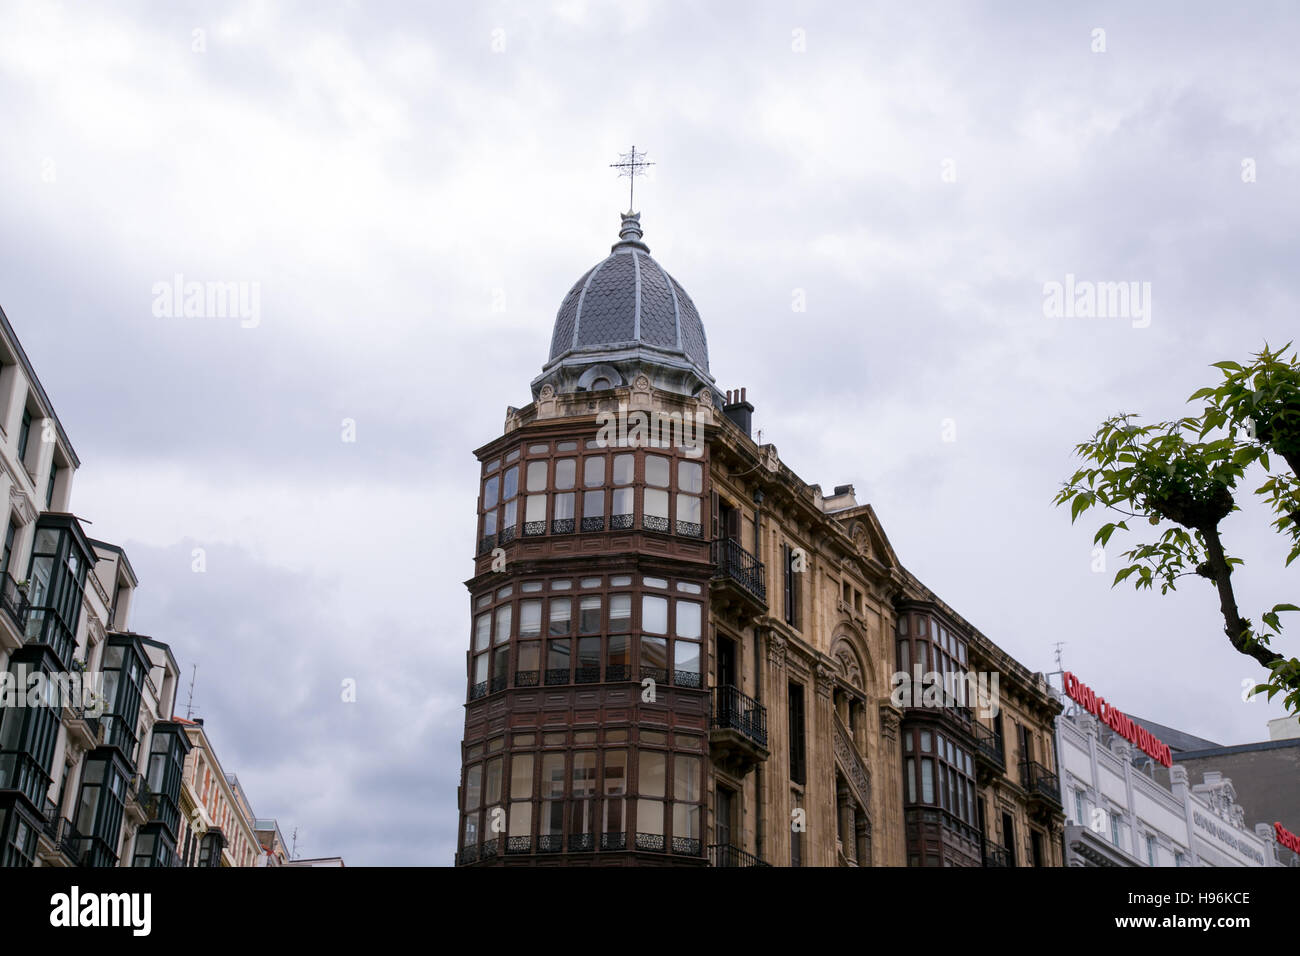 Dome en haut d'un immeuble à Bilbao, en Espagne. Banque D'Images